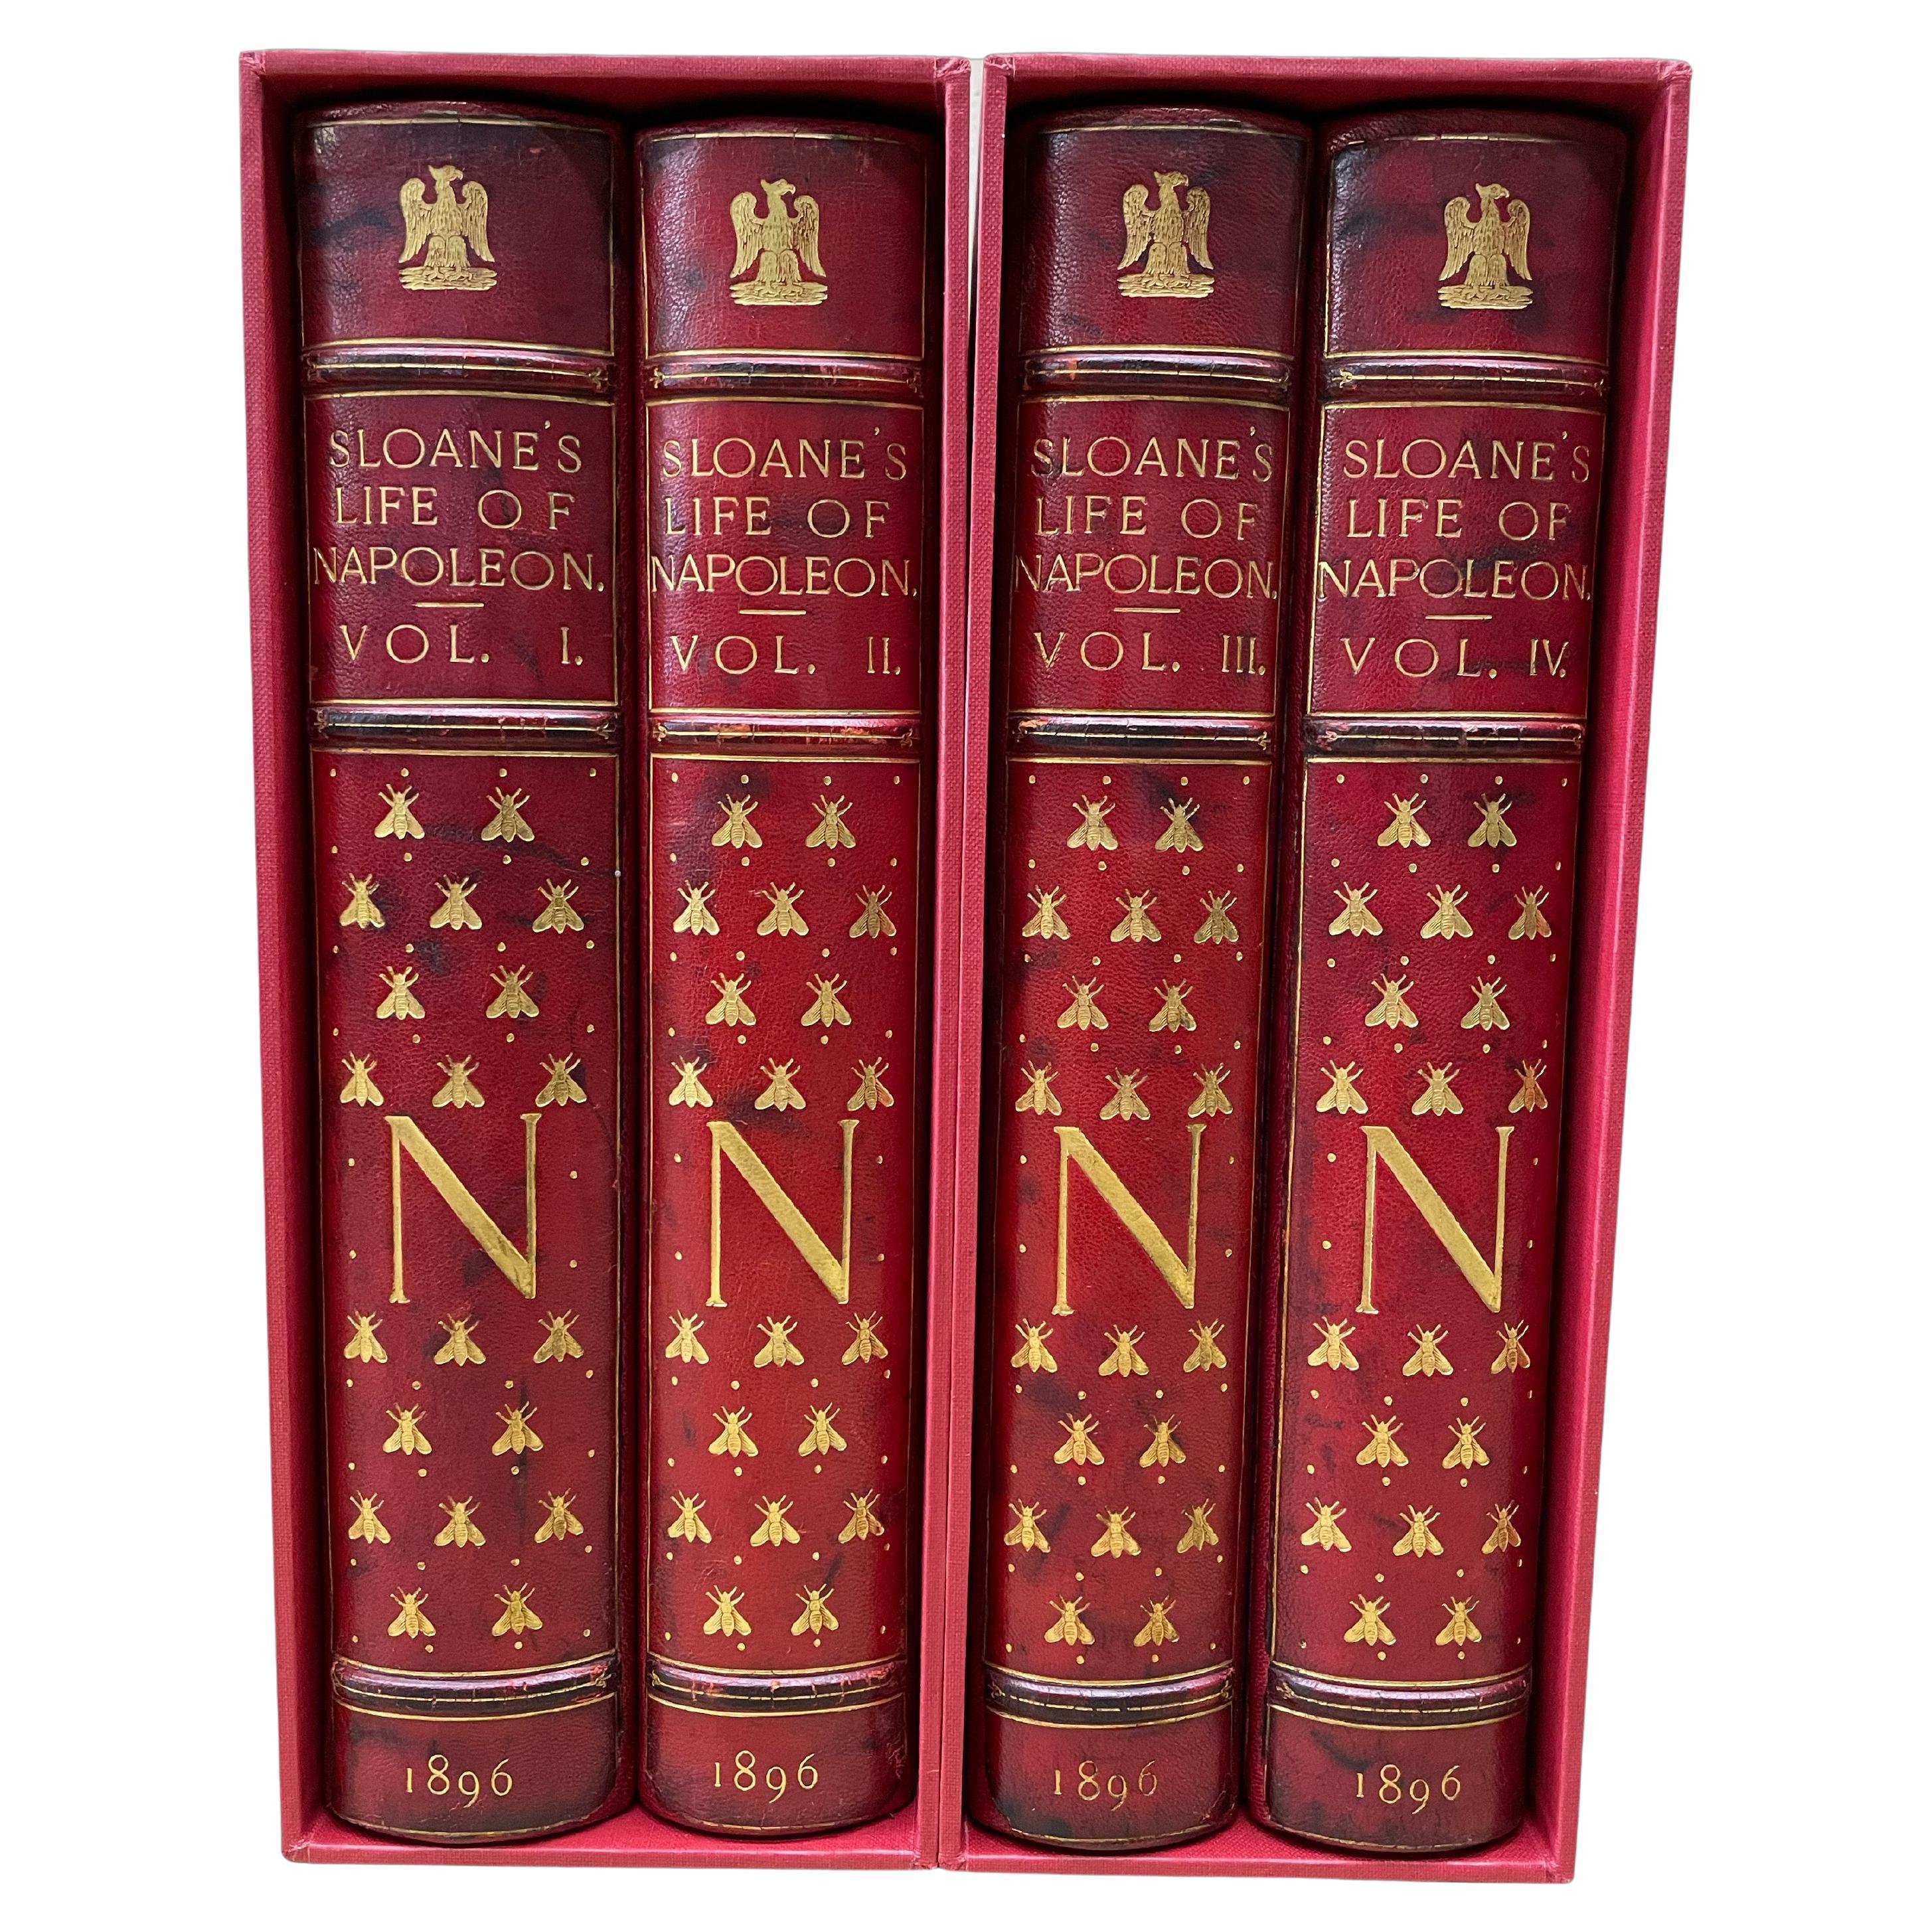 Das Leben von Napoleon Bonaparte von William Milligan Sloan, in vier Bänden, 1896